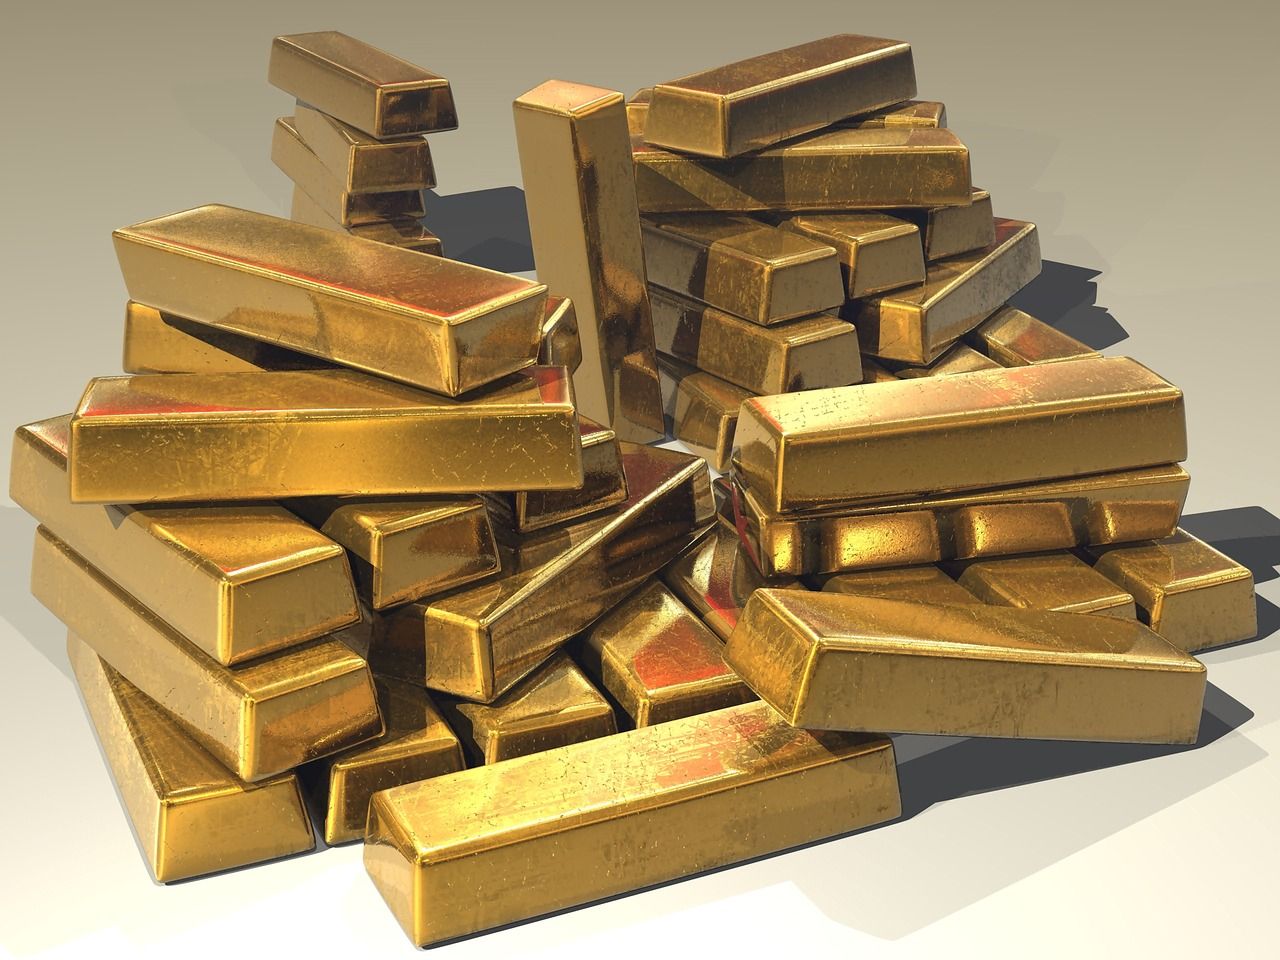 Król metali szlachetnych - dlaczego warto inwestować w złoto?